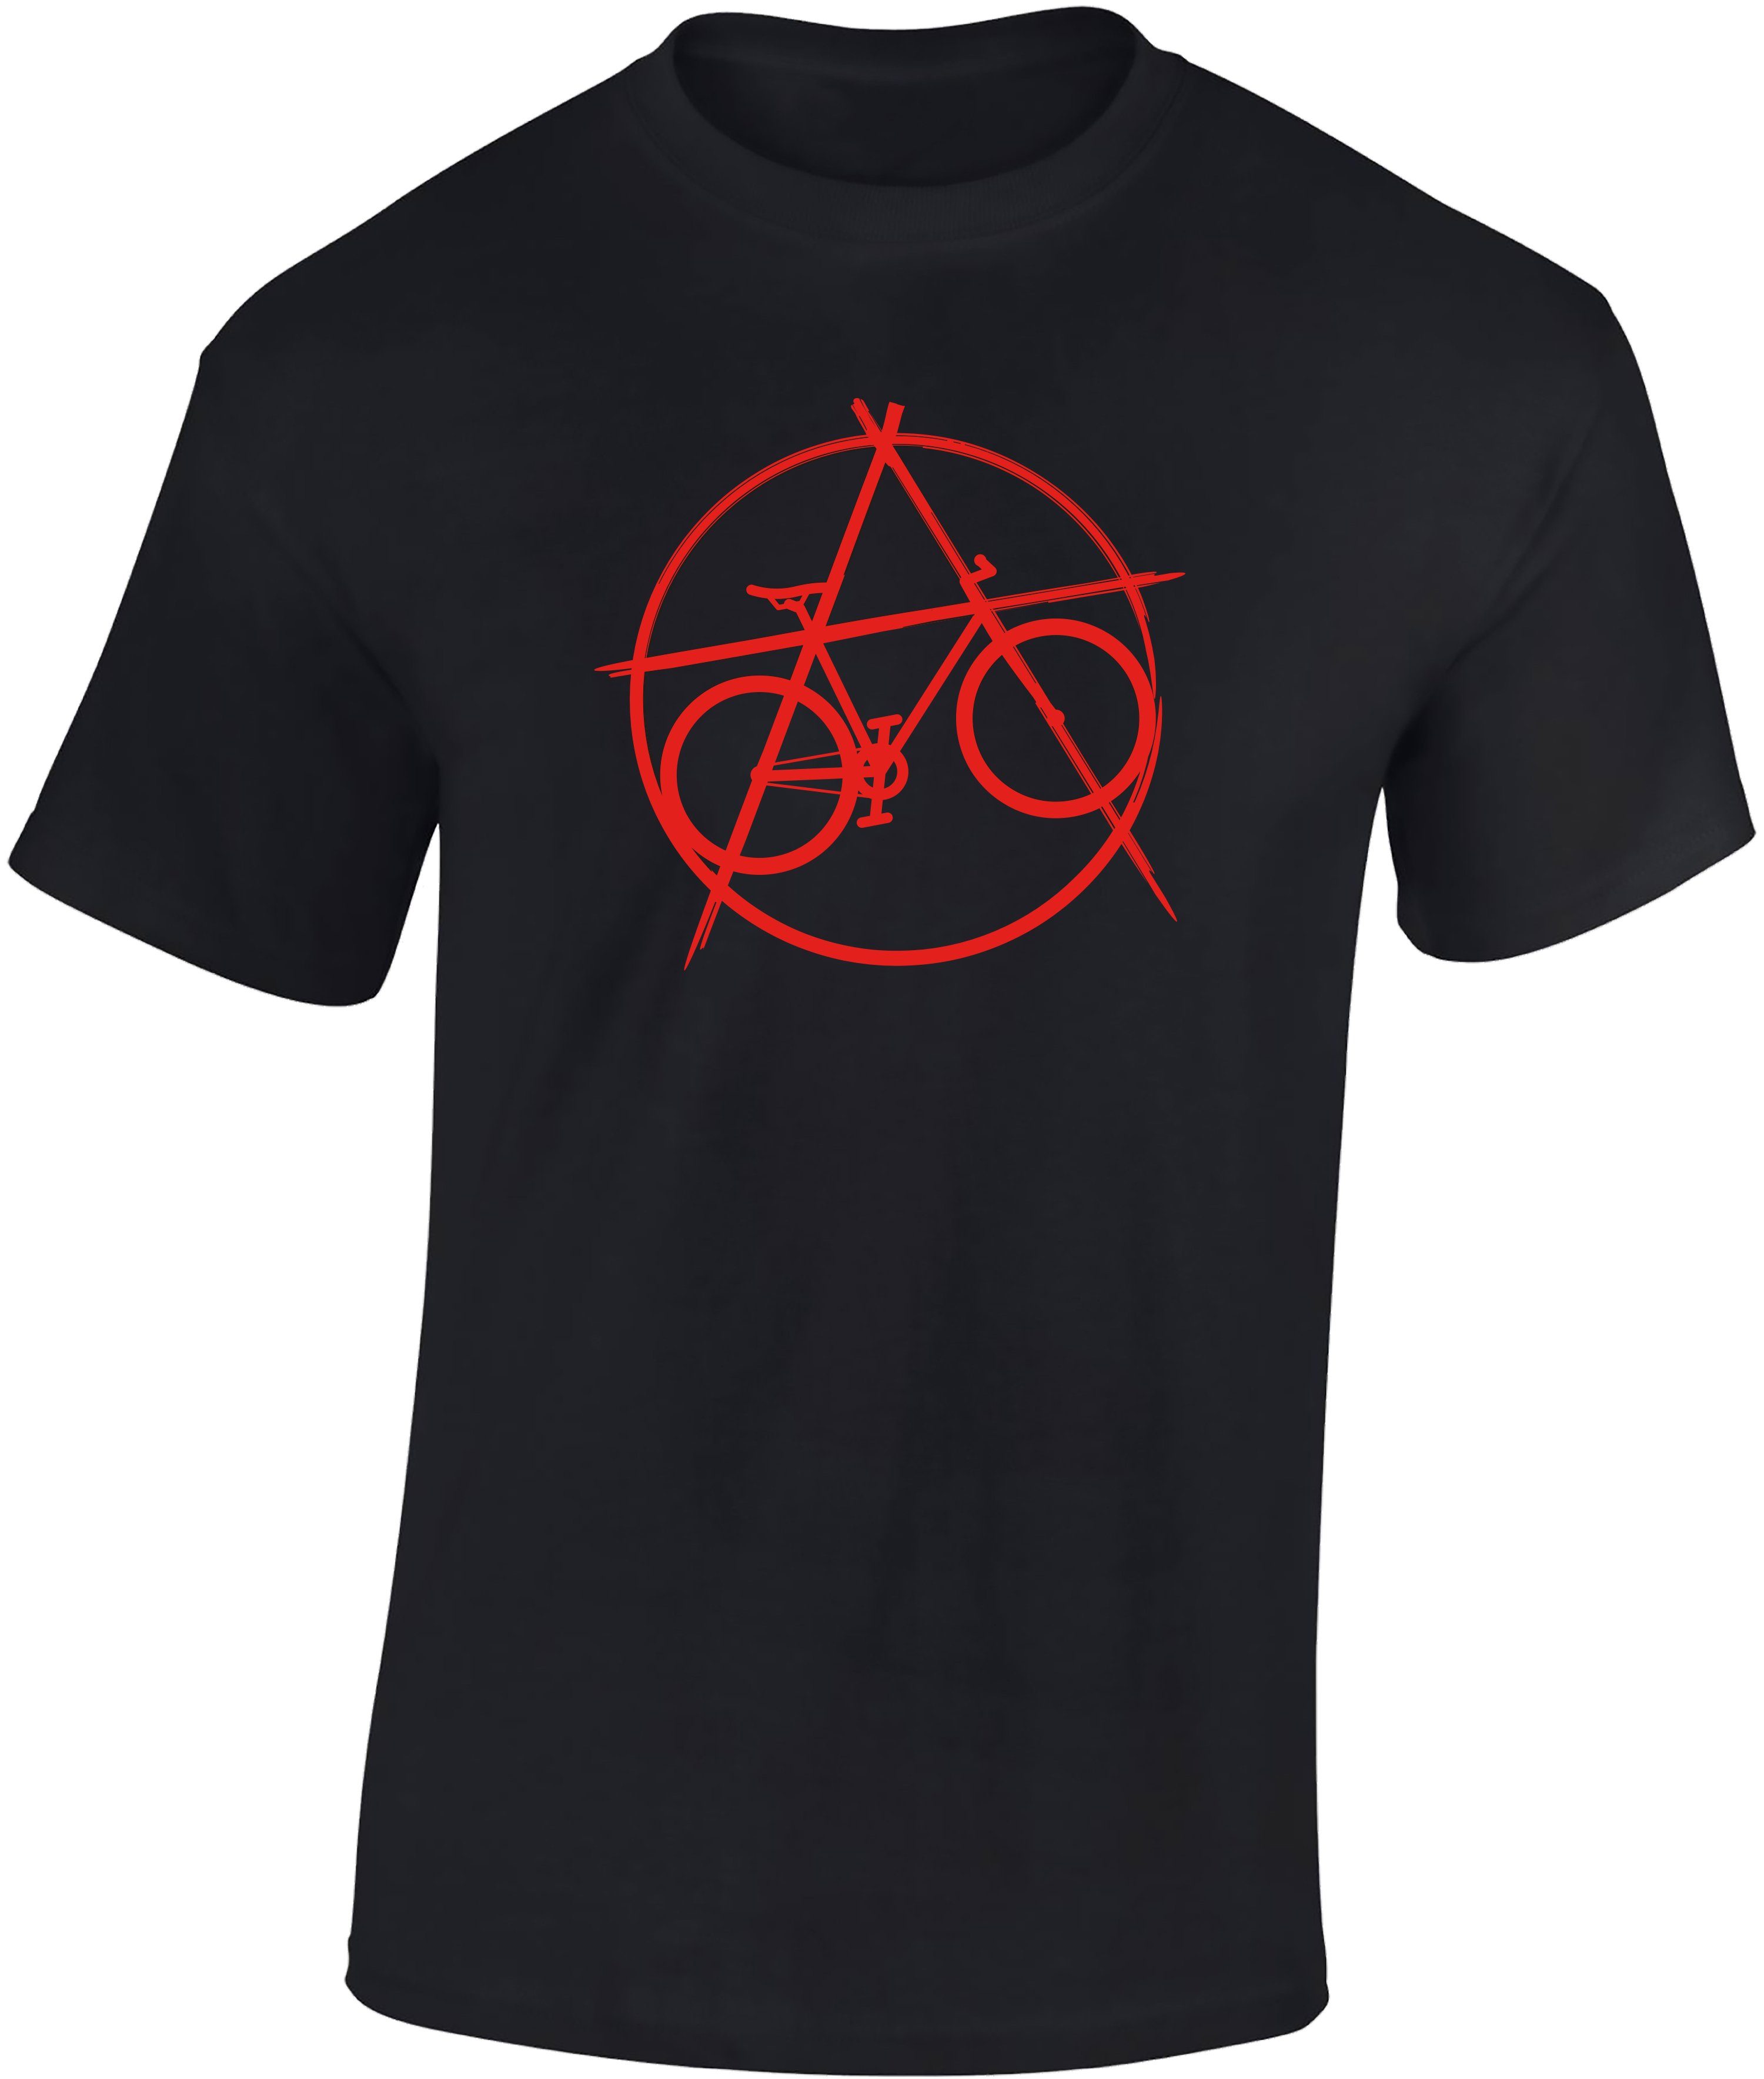 Baddery Print-Shirt Fahrrad T-Shirt : Anarchy Bike - Sport Tshirts Herren, hochwertiger Siebdruck, auch Übergrößen, aus Baumwolle